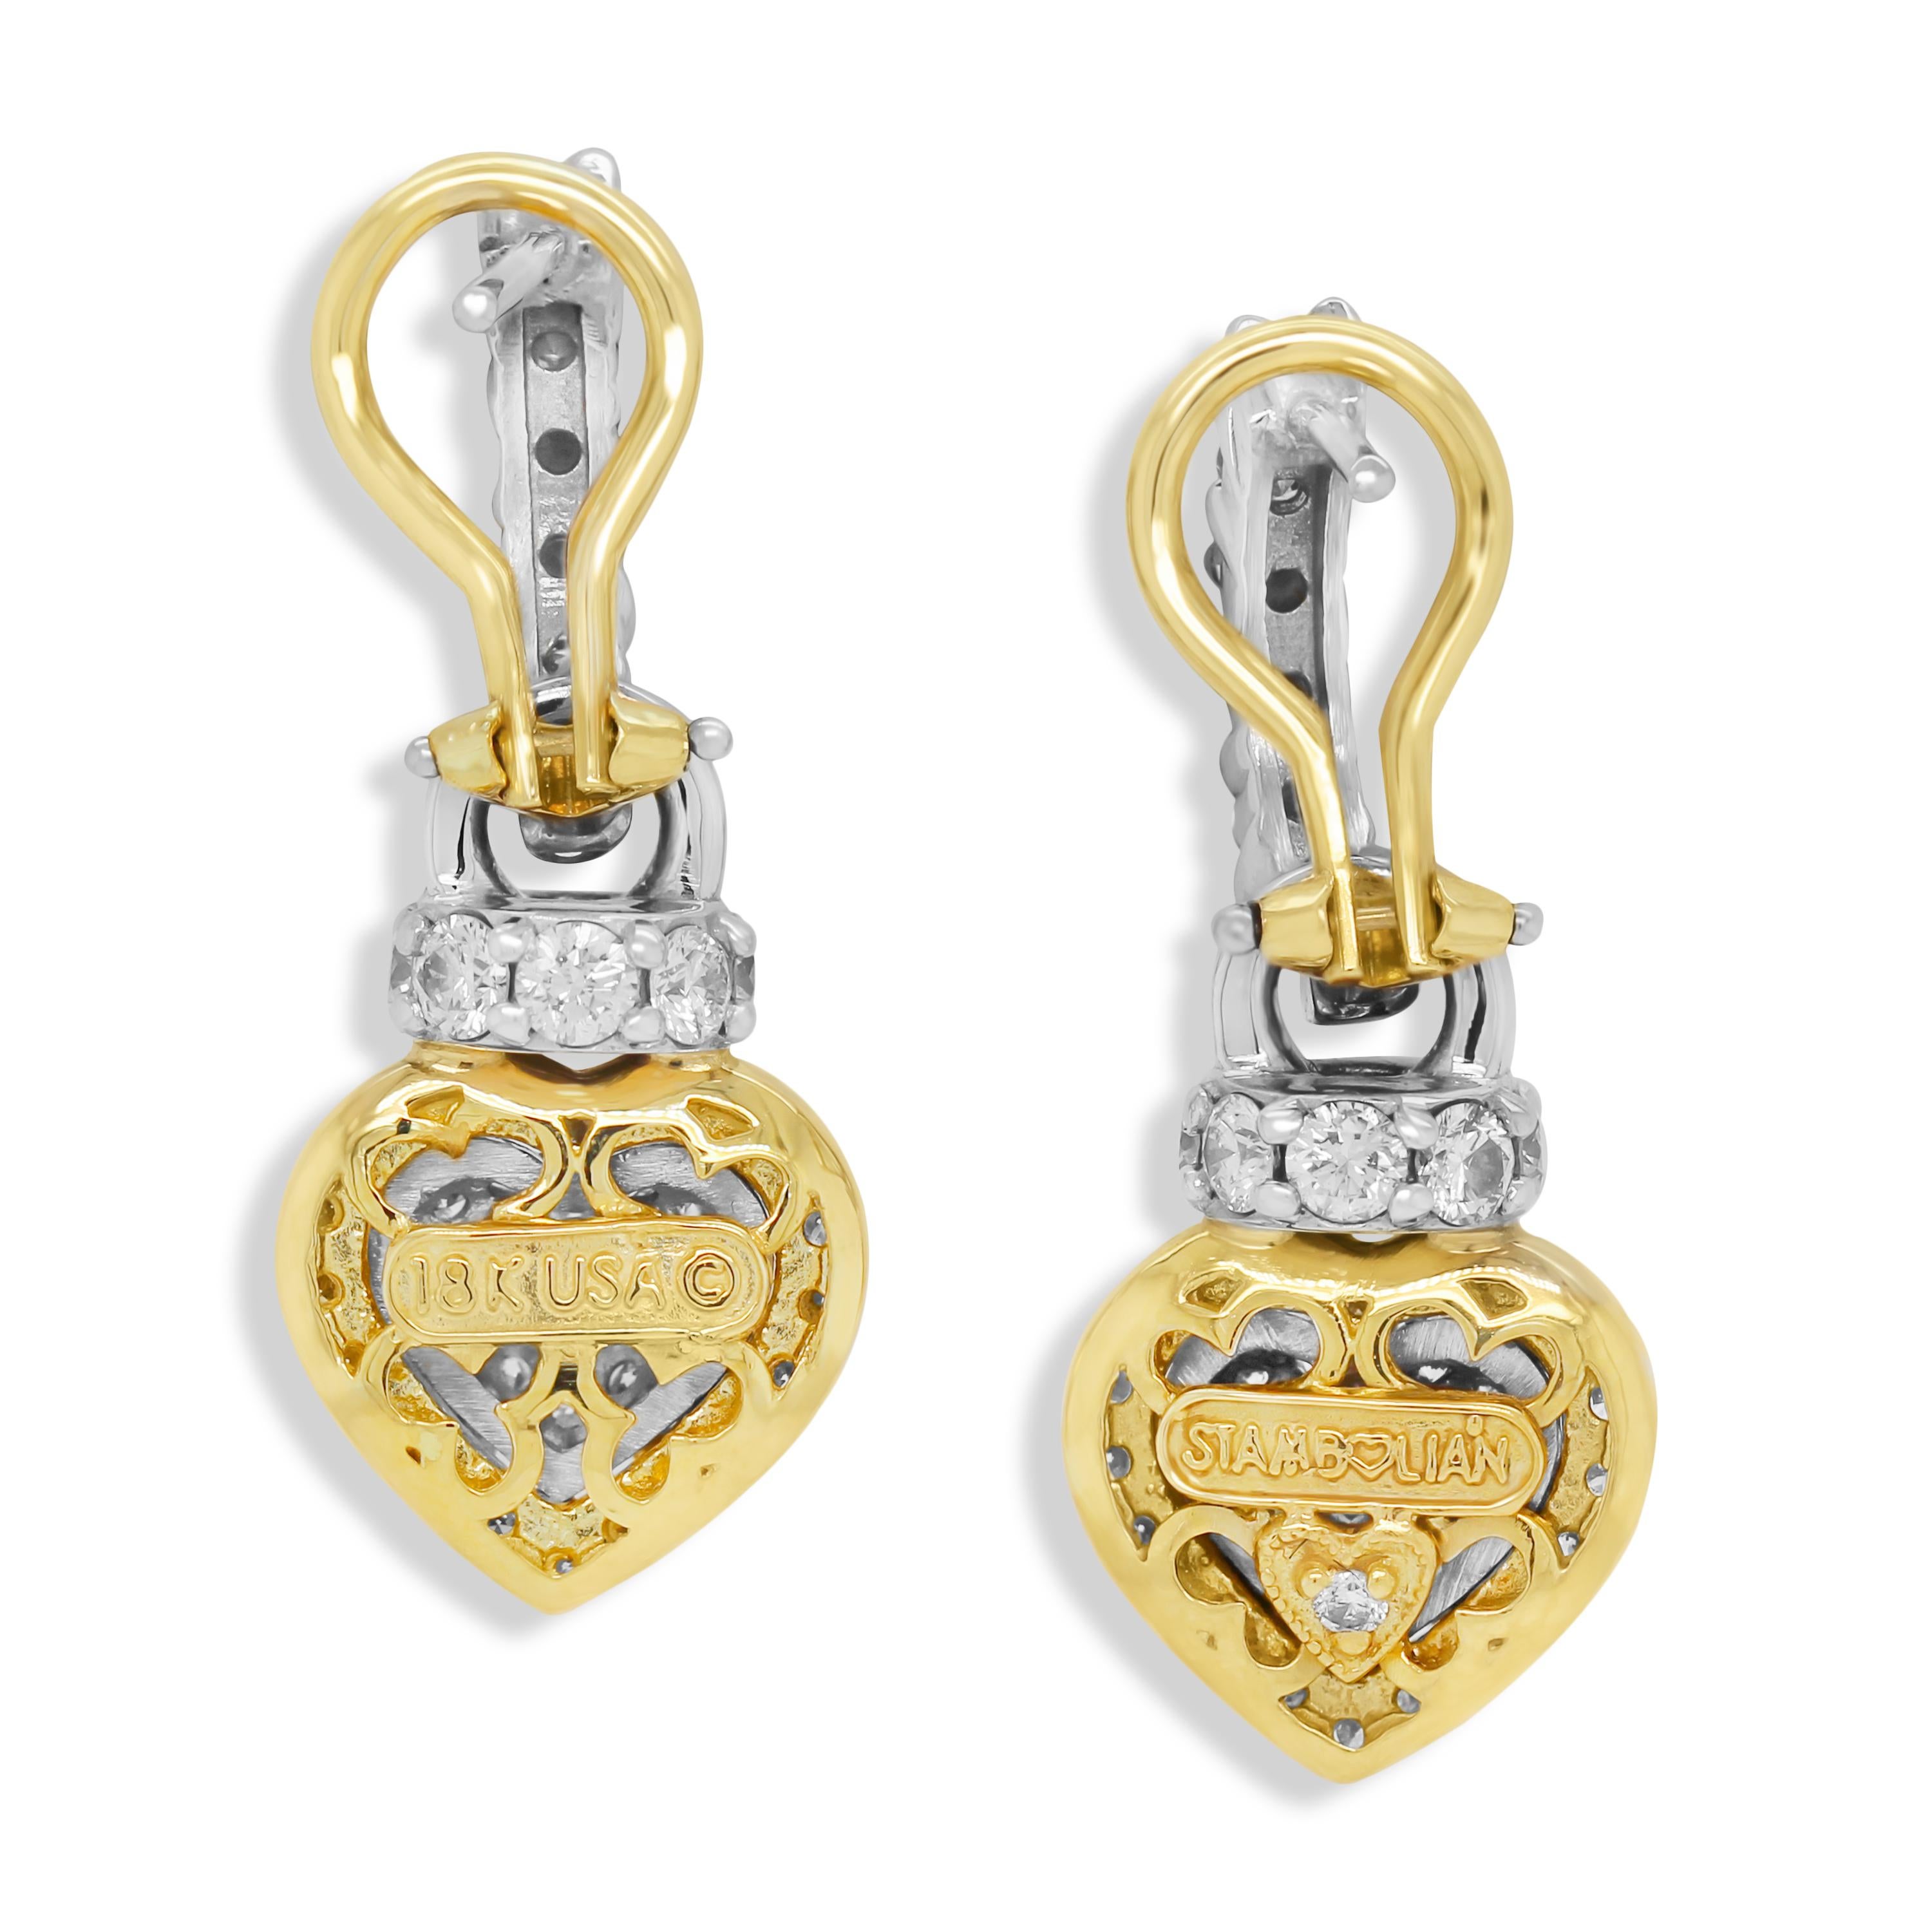 Stambolian 18K Zweifarbig Gelb Weißgold Diamant Herzen Tropfen Ohrringe baumeln

Dieses wunderschöne Paar Ohrringe besteht aus einem mit Diamanten besetzten Herz und einer diamantbesetzten Spitze.

2.33 Karat Diamanten, Farbe G, Reinheit VS,